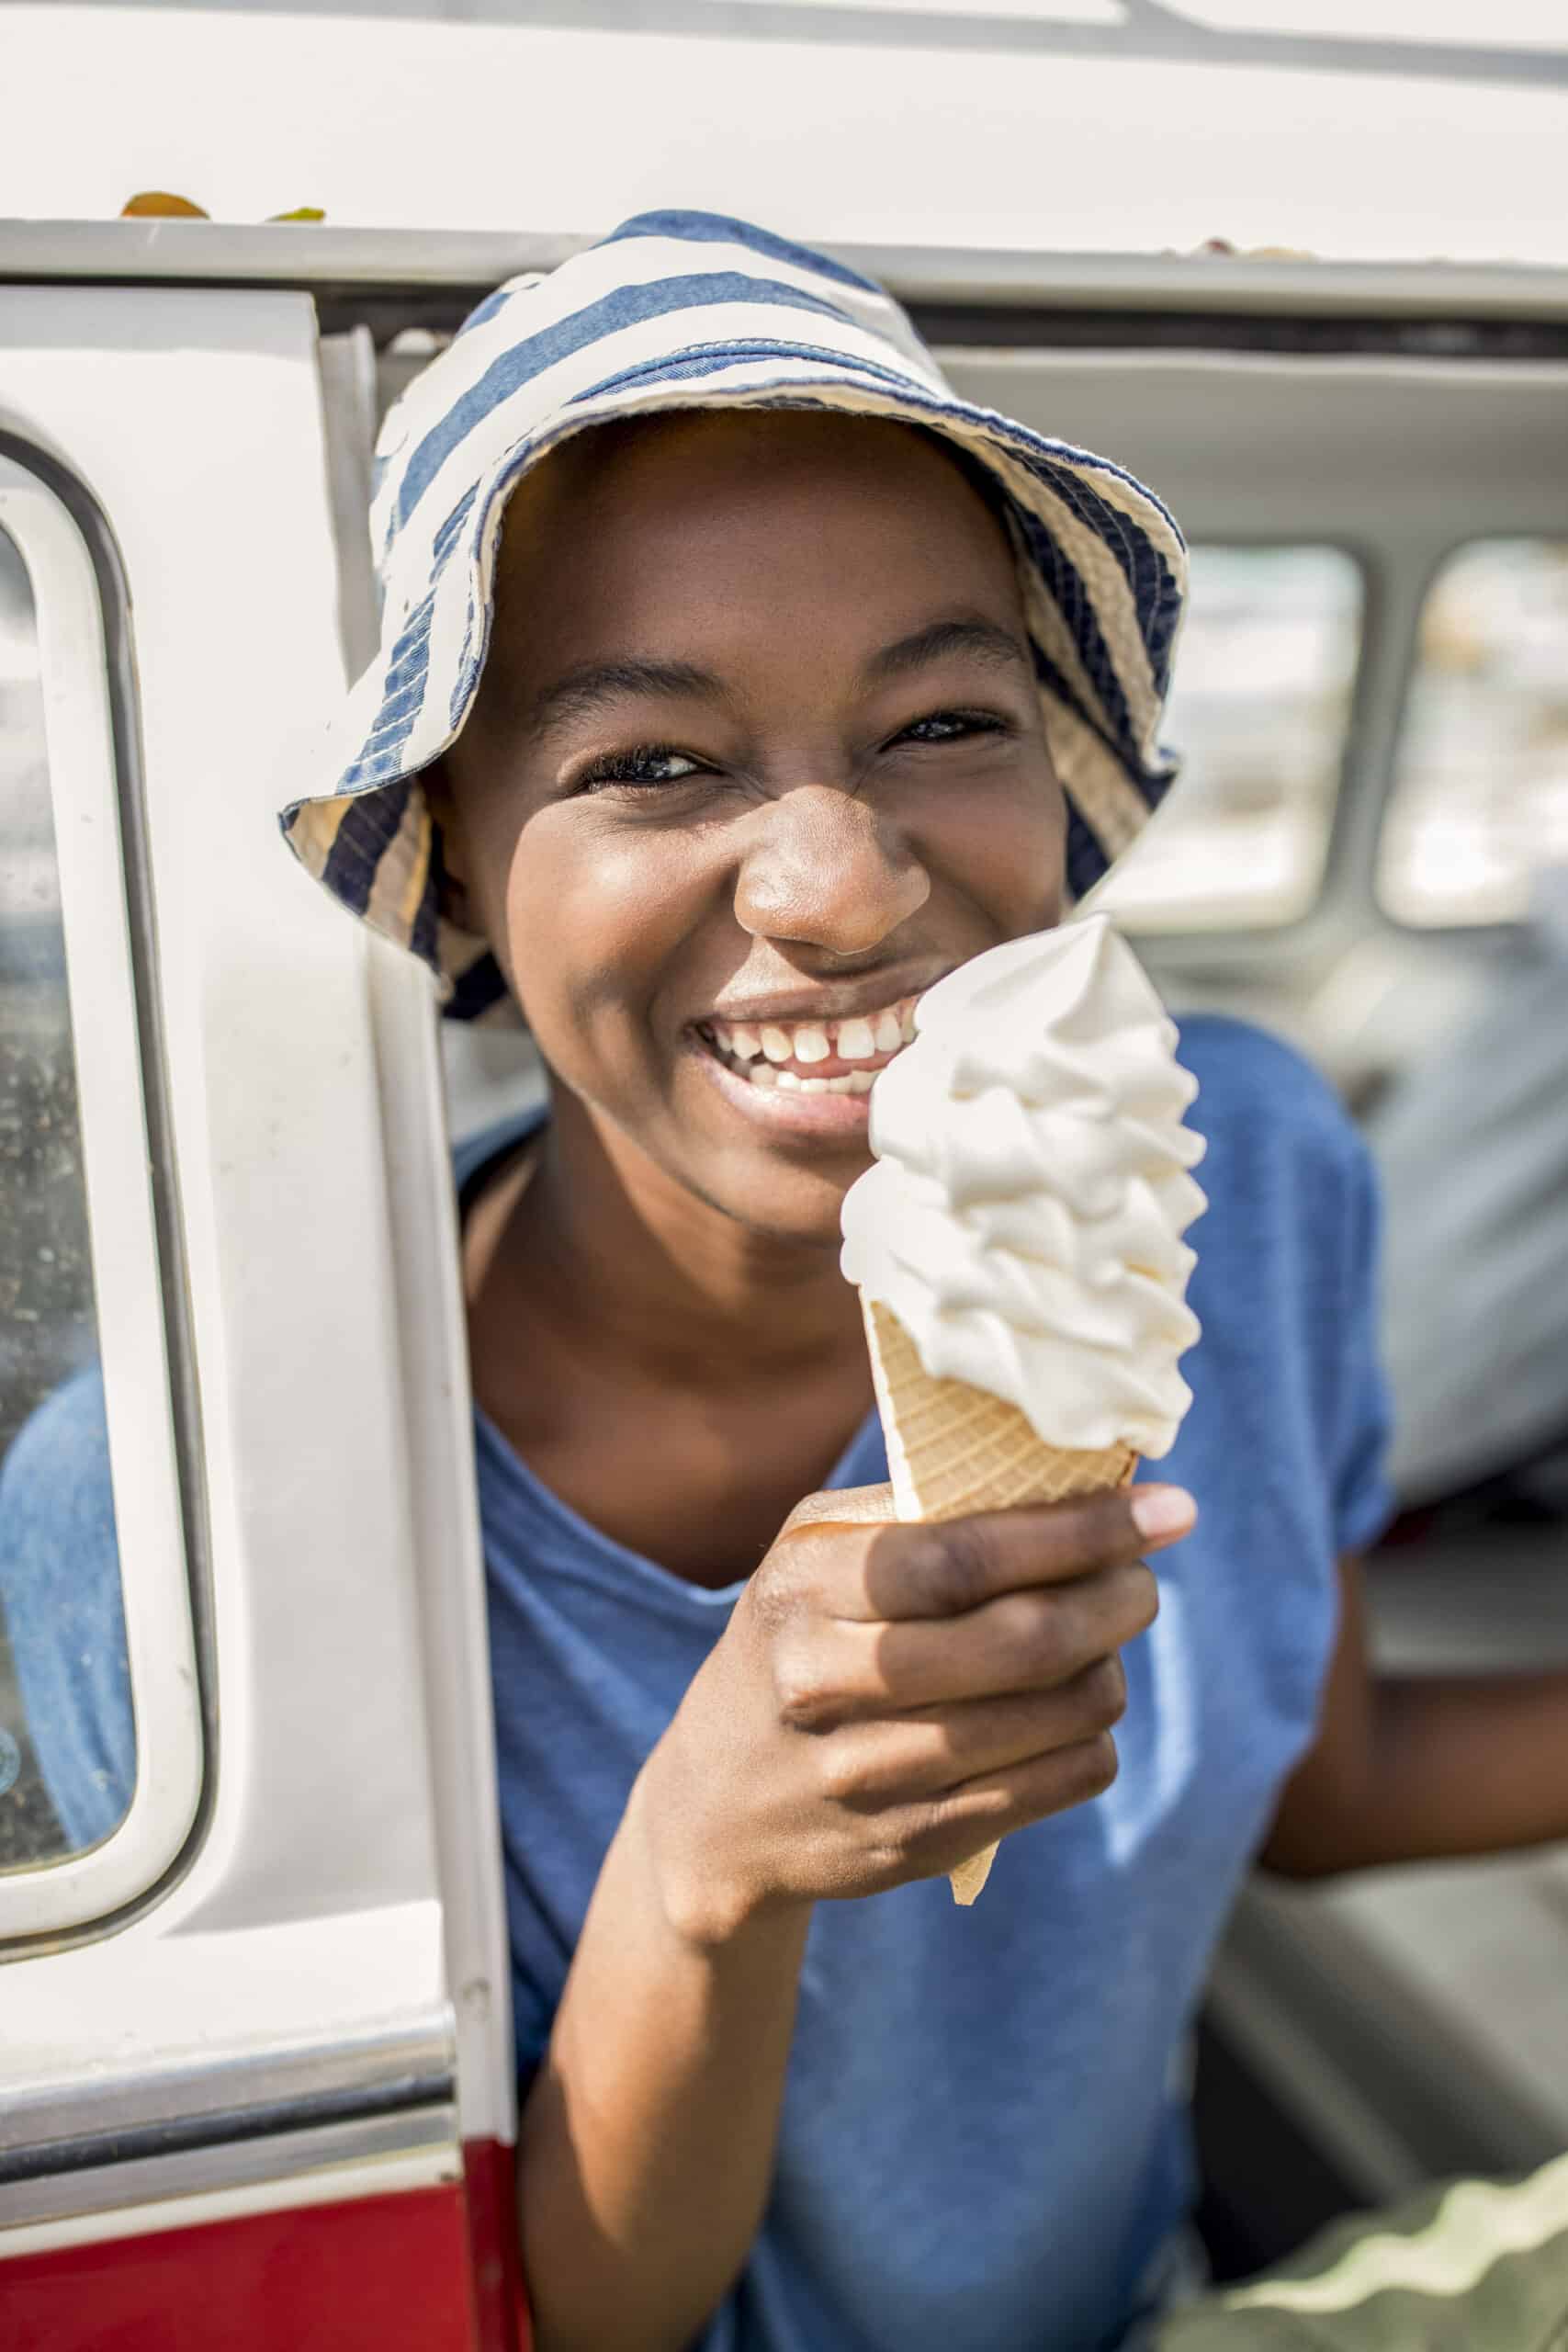 Eine fröhliche junge Frau mit gestreifter Mütze hält eine Vanilleeistüte und lächelt strahlend neben einem Auto an einem sonnigen Tag. © Fotografie Tomas Rodriguez